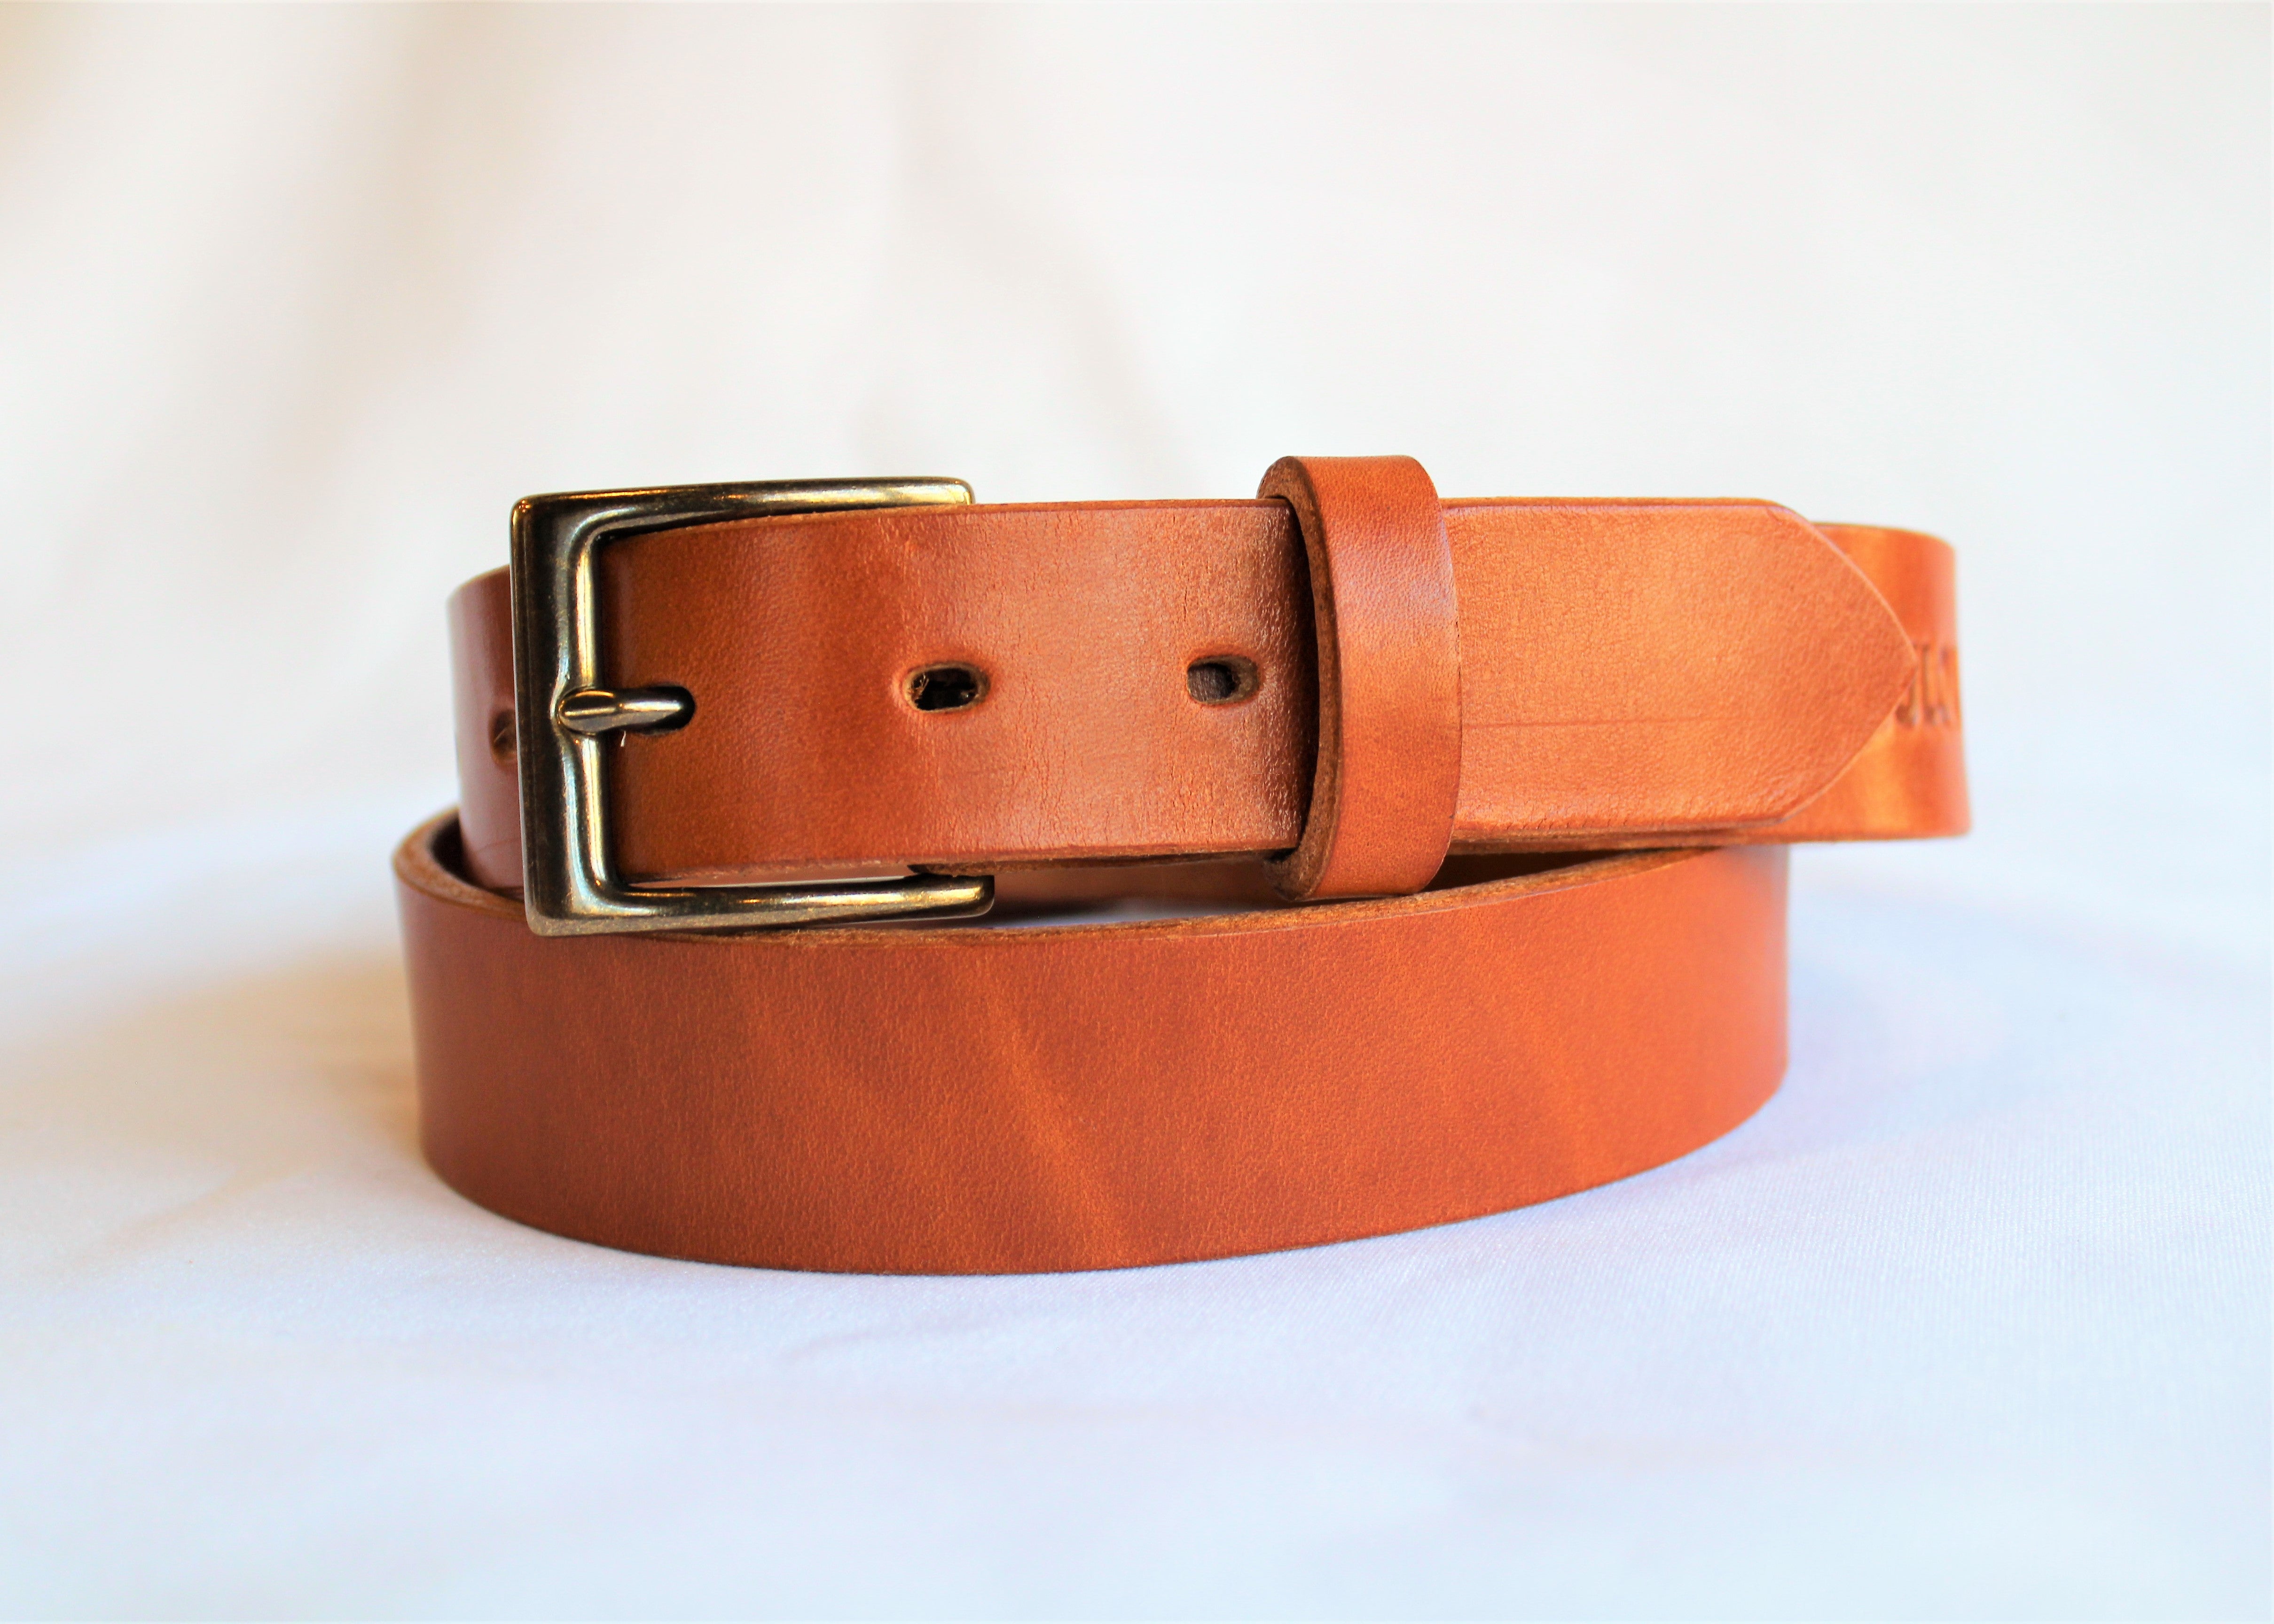 Traditional Buck Brown 1.5" Men's Belt